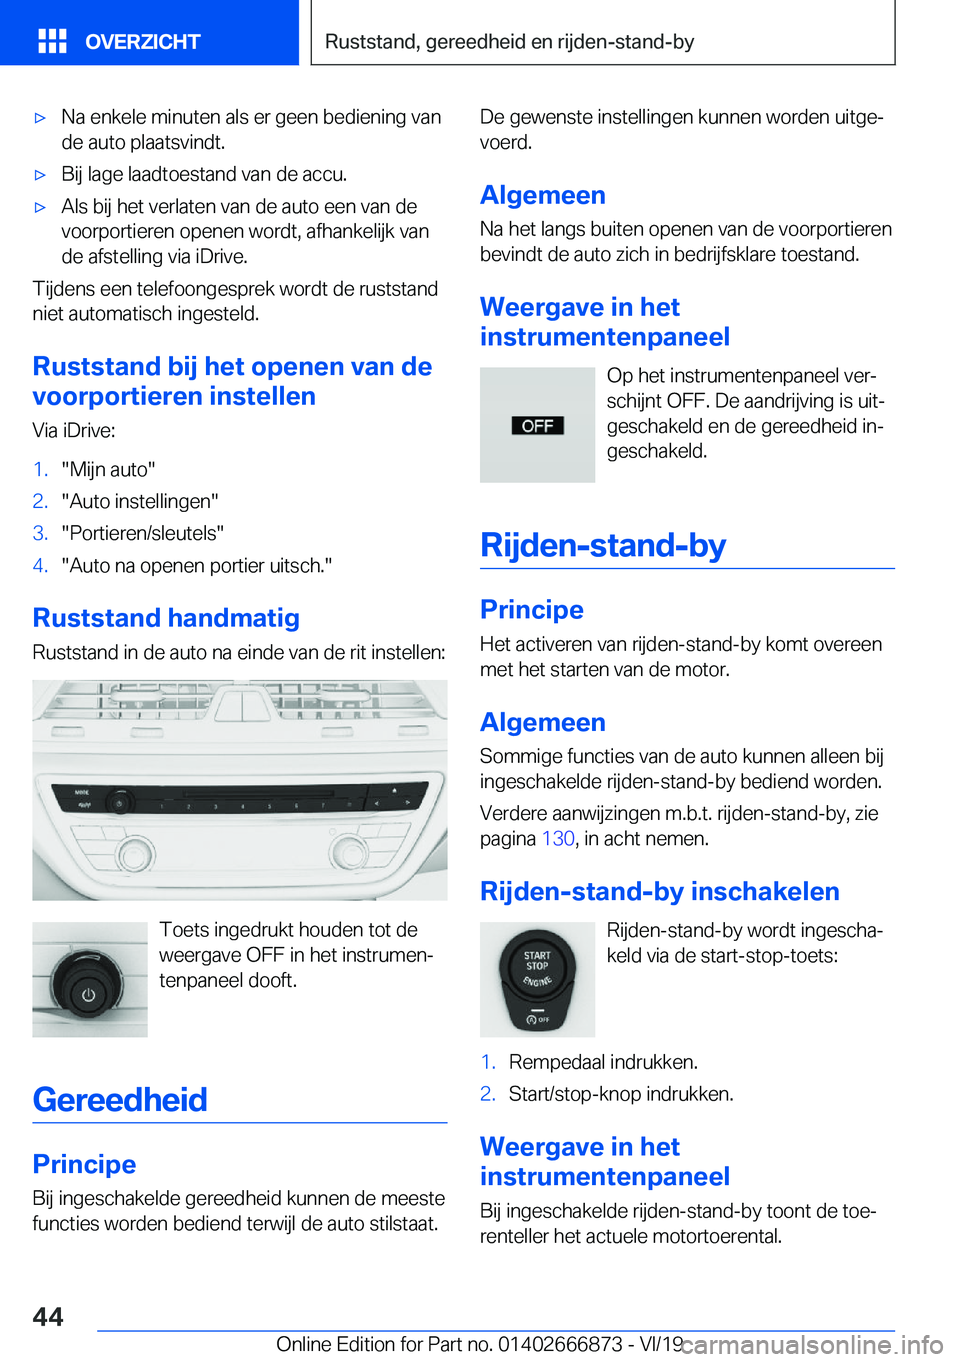 BMW X4 M 2020  Instructieboekjes (in Dutch) 'x�N�a��e�n�k�e�l�e��m�i�n�u�t�e�n��a�l�s��e�r��g�e�e�n��b�e�d�i�e�n�i�n�g��v�a�n�d�e��a�u�t�o��p�l�a�a�t�s�v�i�n�d�t�.'x�B�i�j��l�a�g�e��l�a�a�d�t�o�e�s�t�a�n�d��v�a�n��d�e��a�c